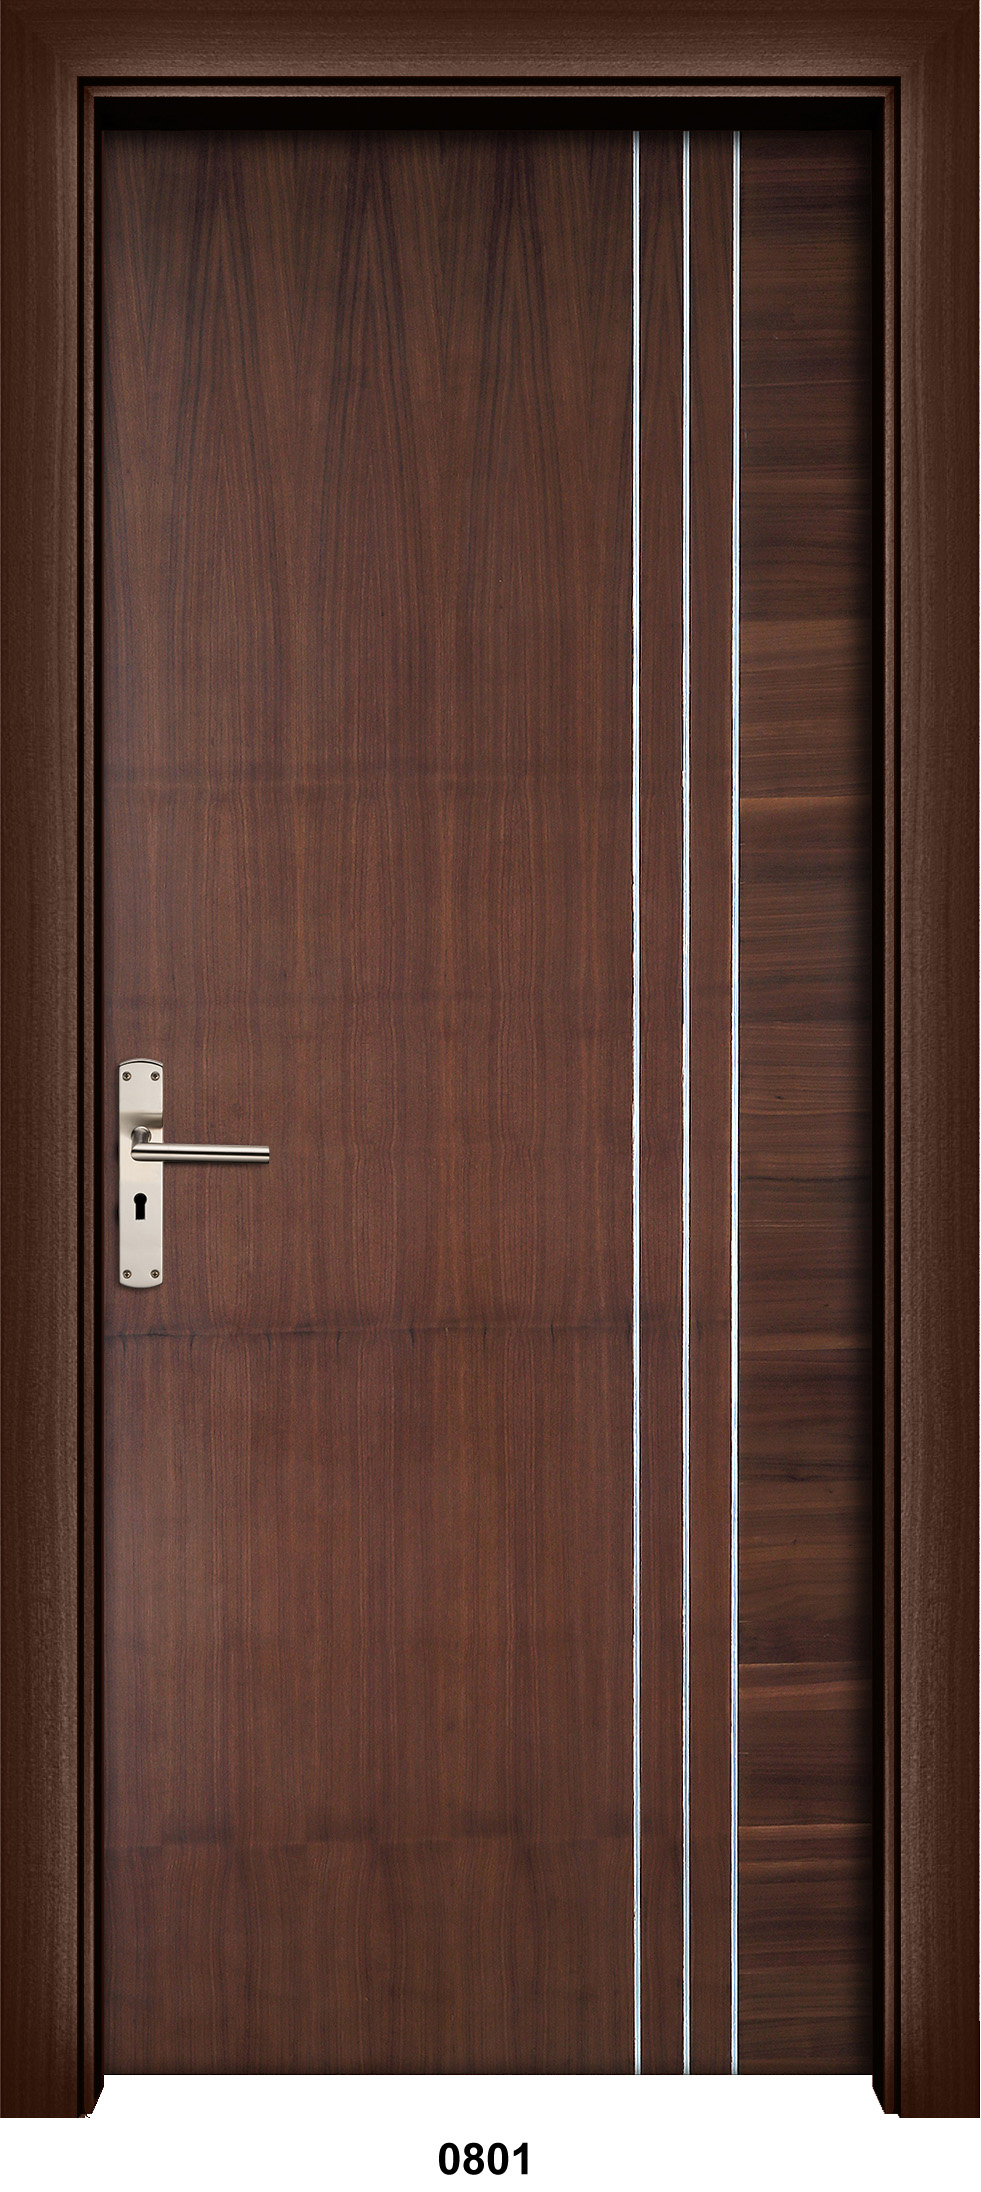 Laminate Designs For Doors